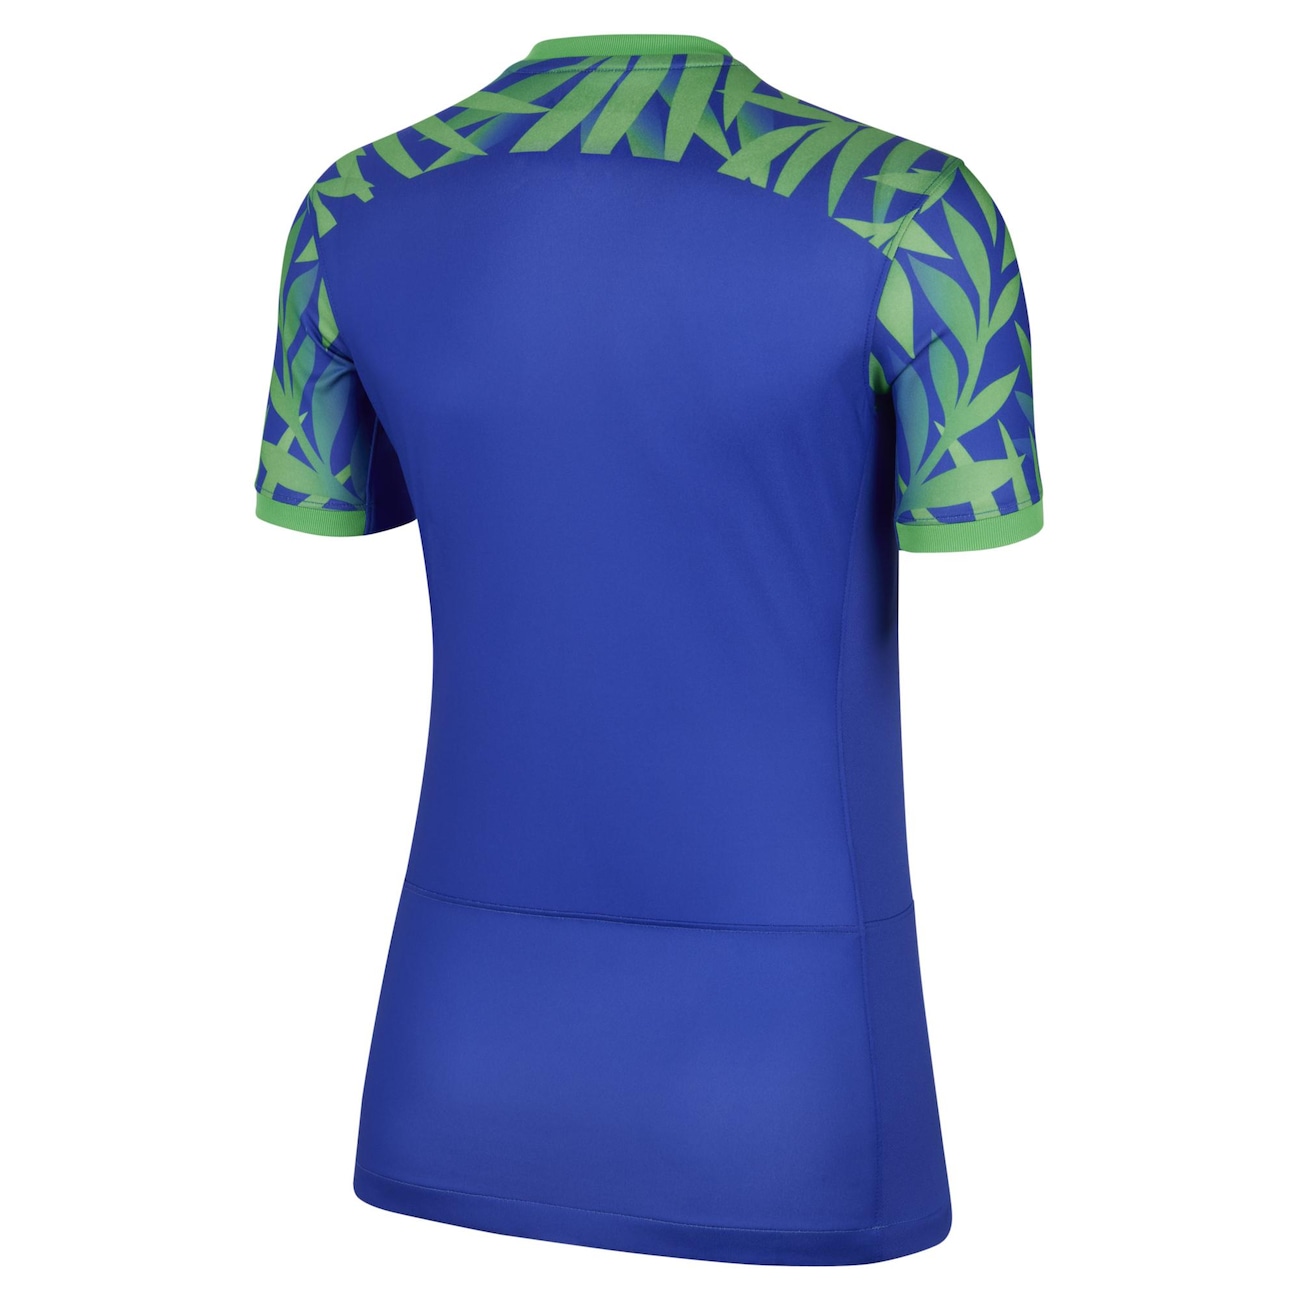 Camisa Nike Seleção Brasil 2014 II w Feminino : Feminino - Camisas de time  : Sua loja online de artigos esportivos - Fantastic Sports